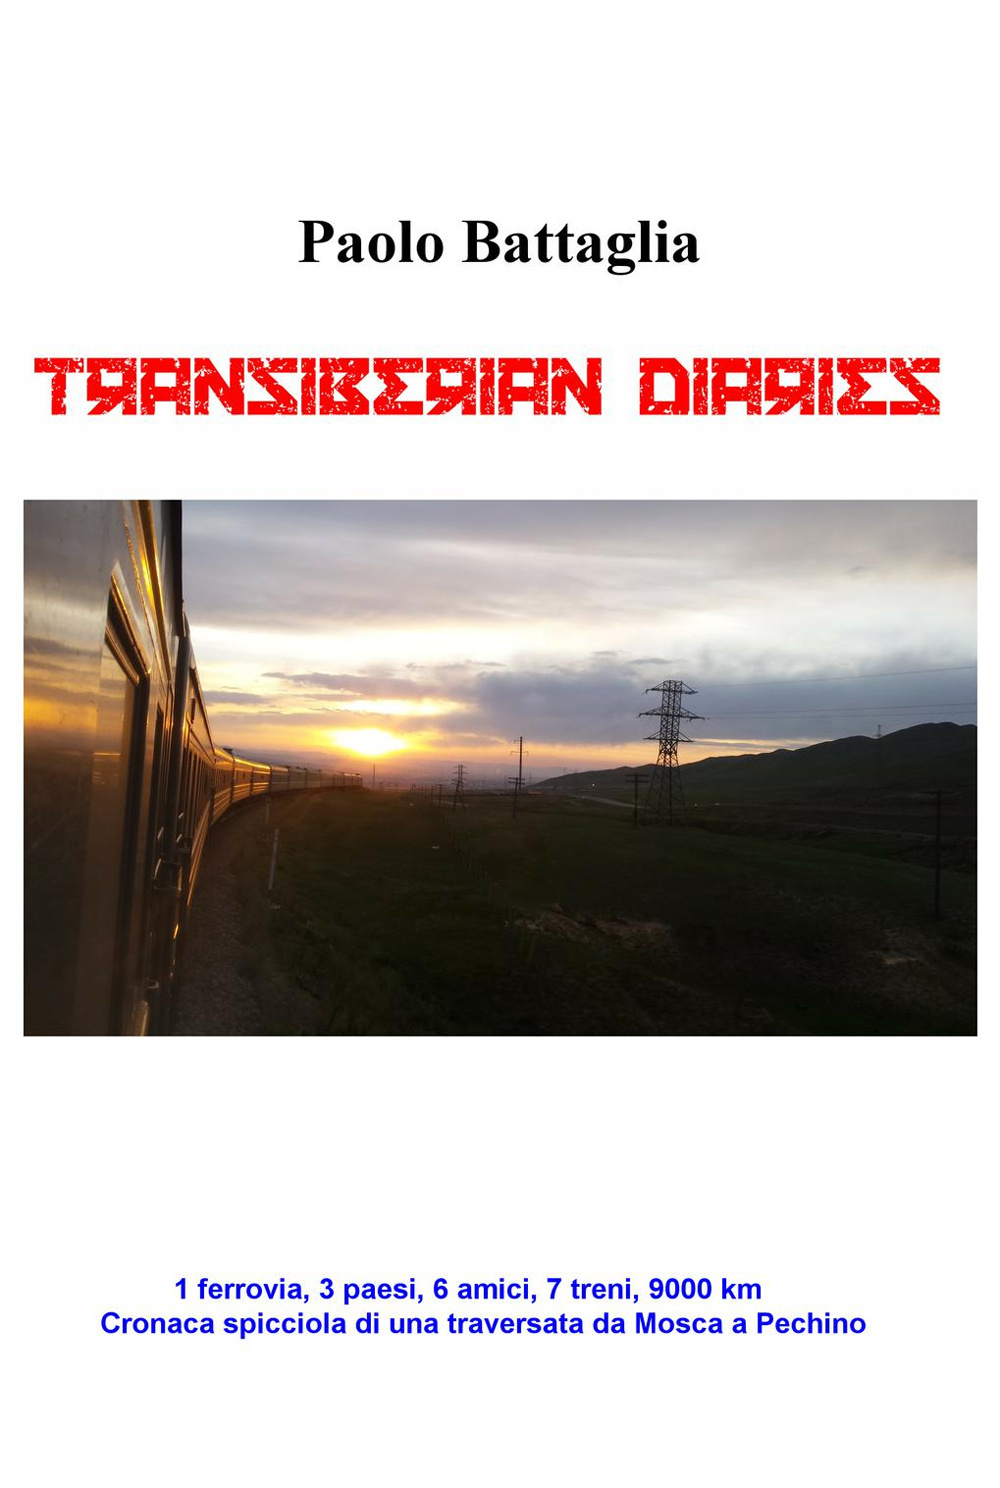 Transiberian diaries. 1 ferrovia, 3 paesi, 6 amici, 7 treni, 9000 km. Conaca spicciola di una traversata da Mosca a Pechino